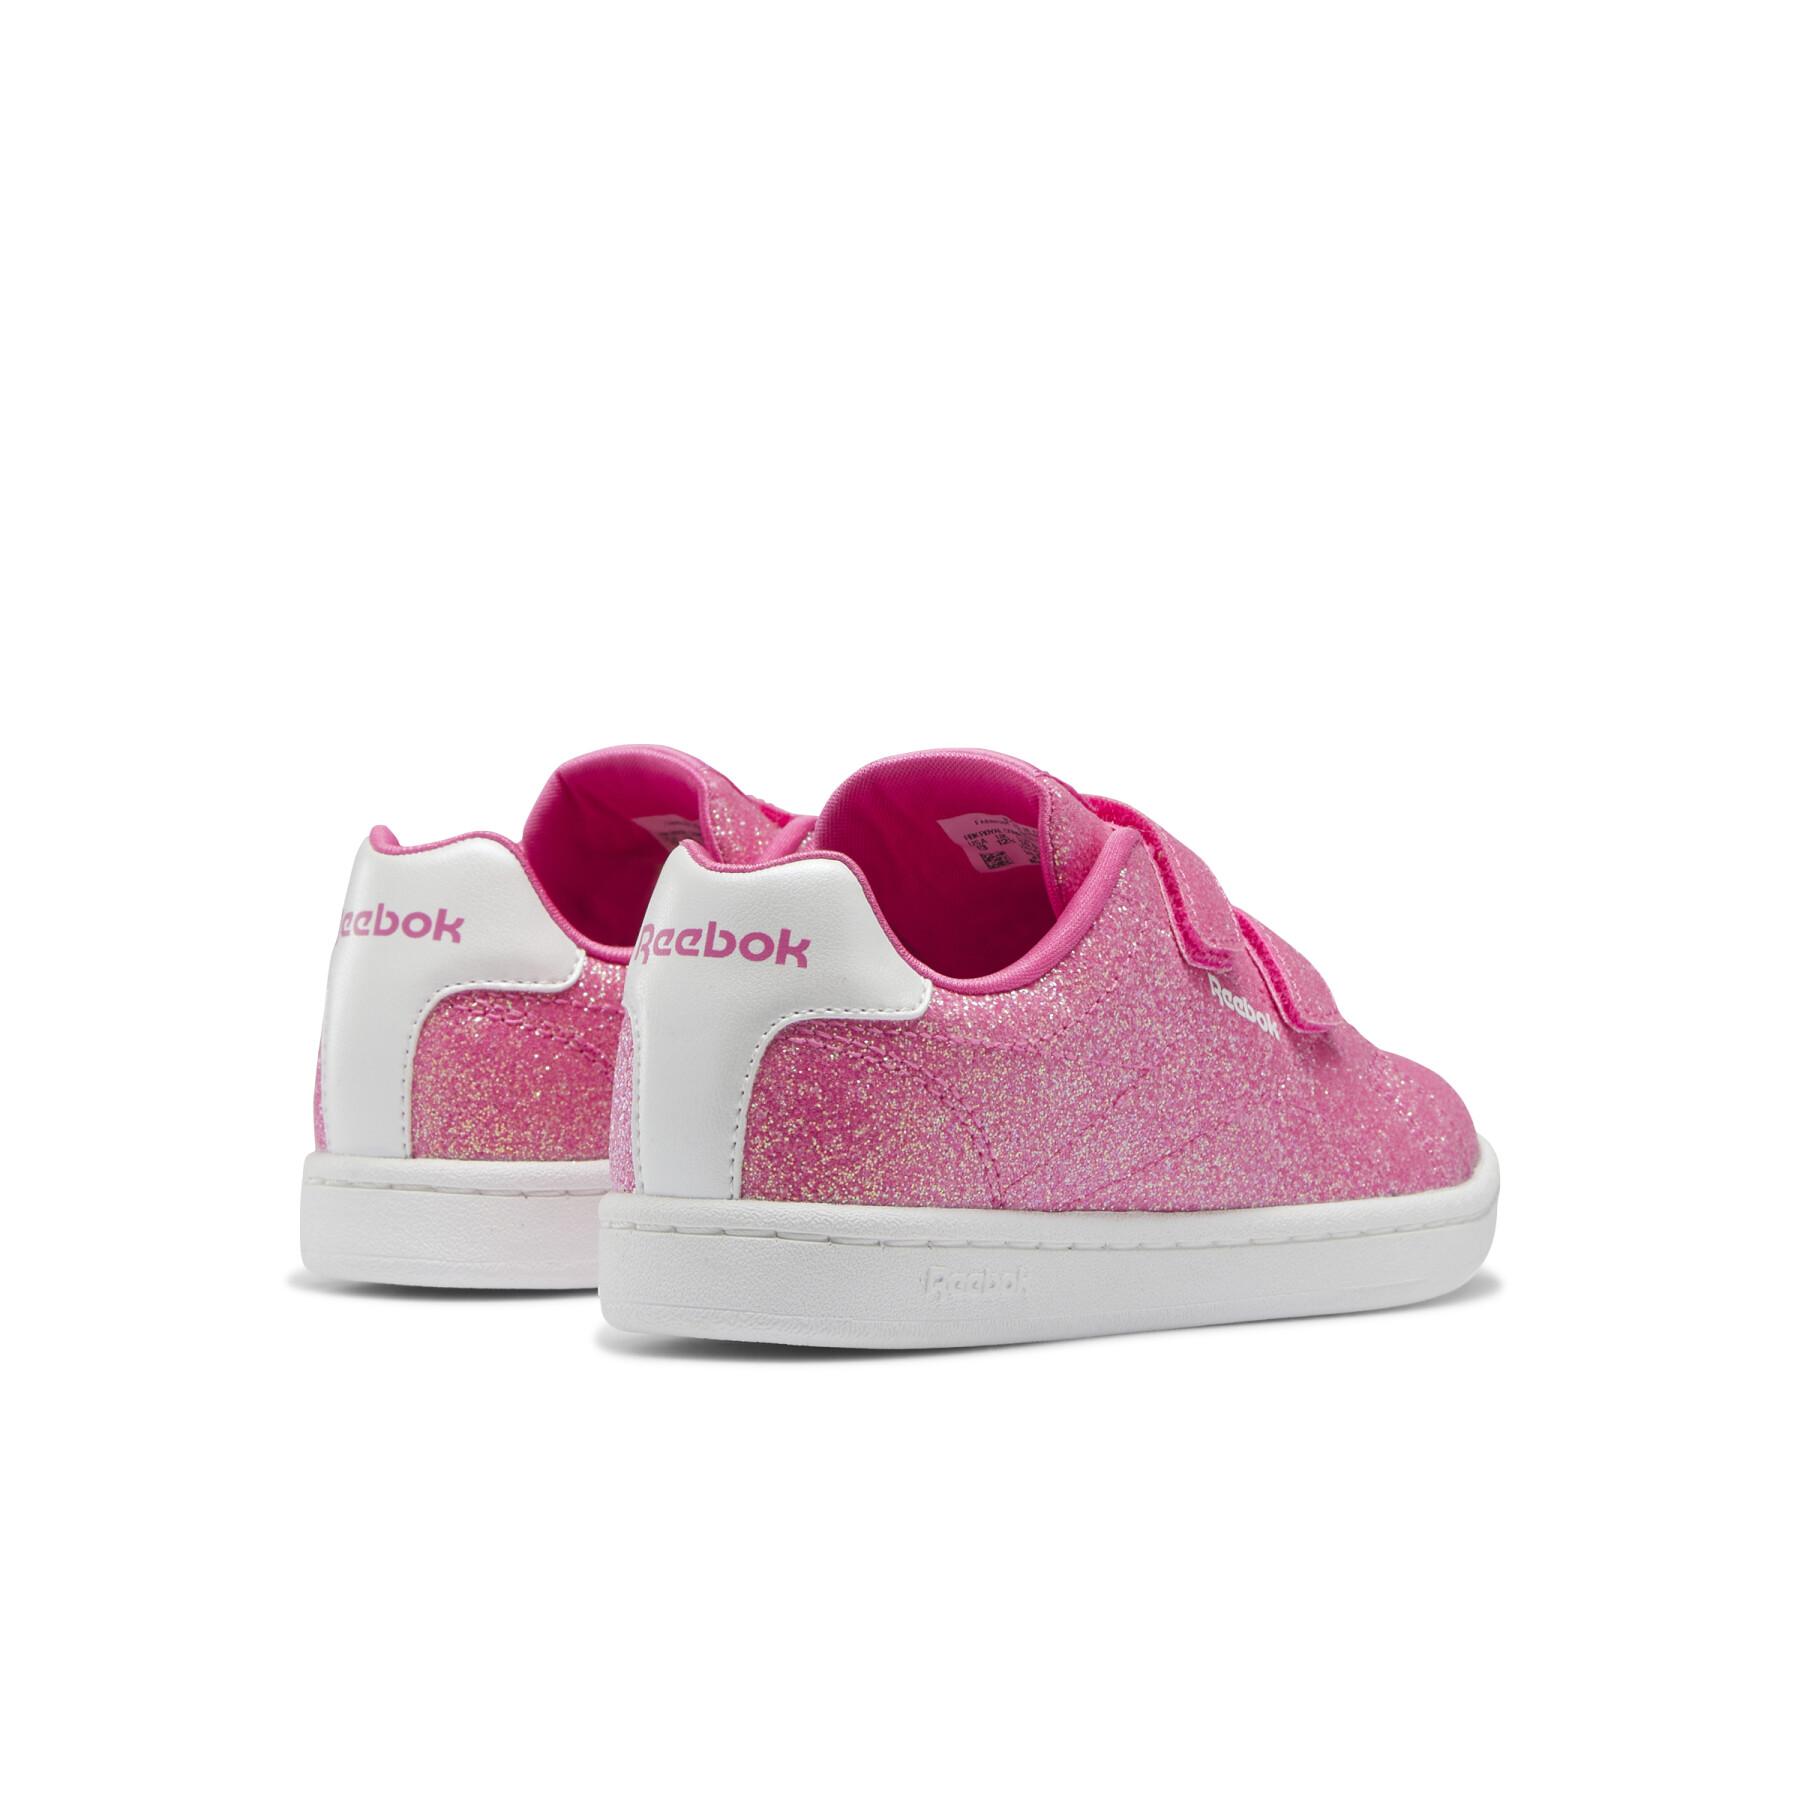 Girl sneakers Reebok Royal Complete Cln 2